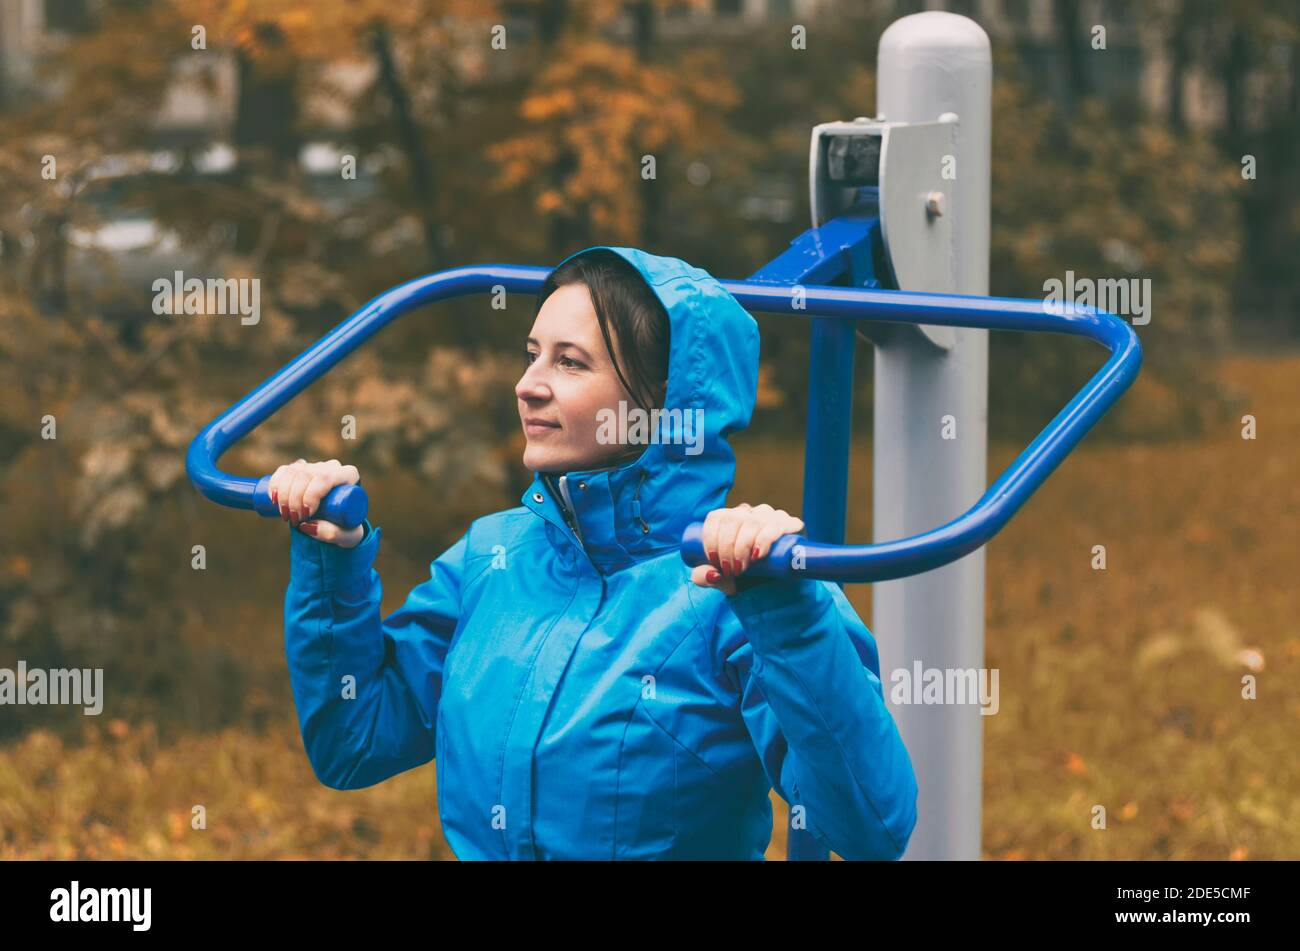 En automne, une jeune femme va pour les sports de plein air se tenir sur les mains courantes d'un simulateur sportif Banque D'Images